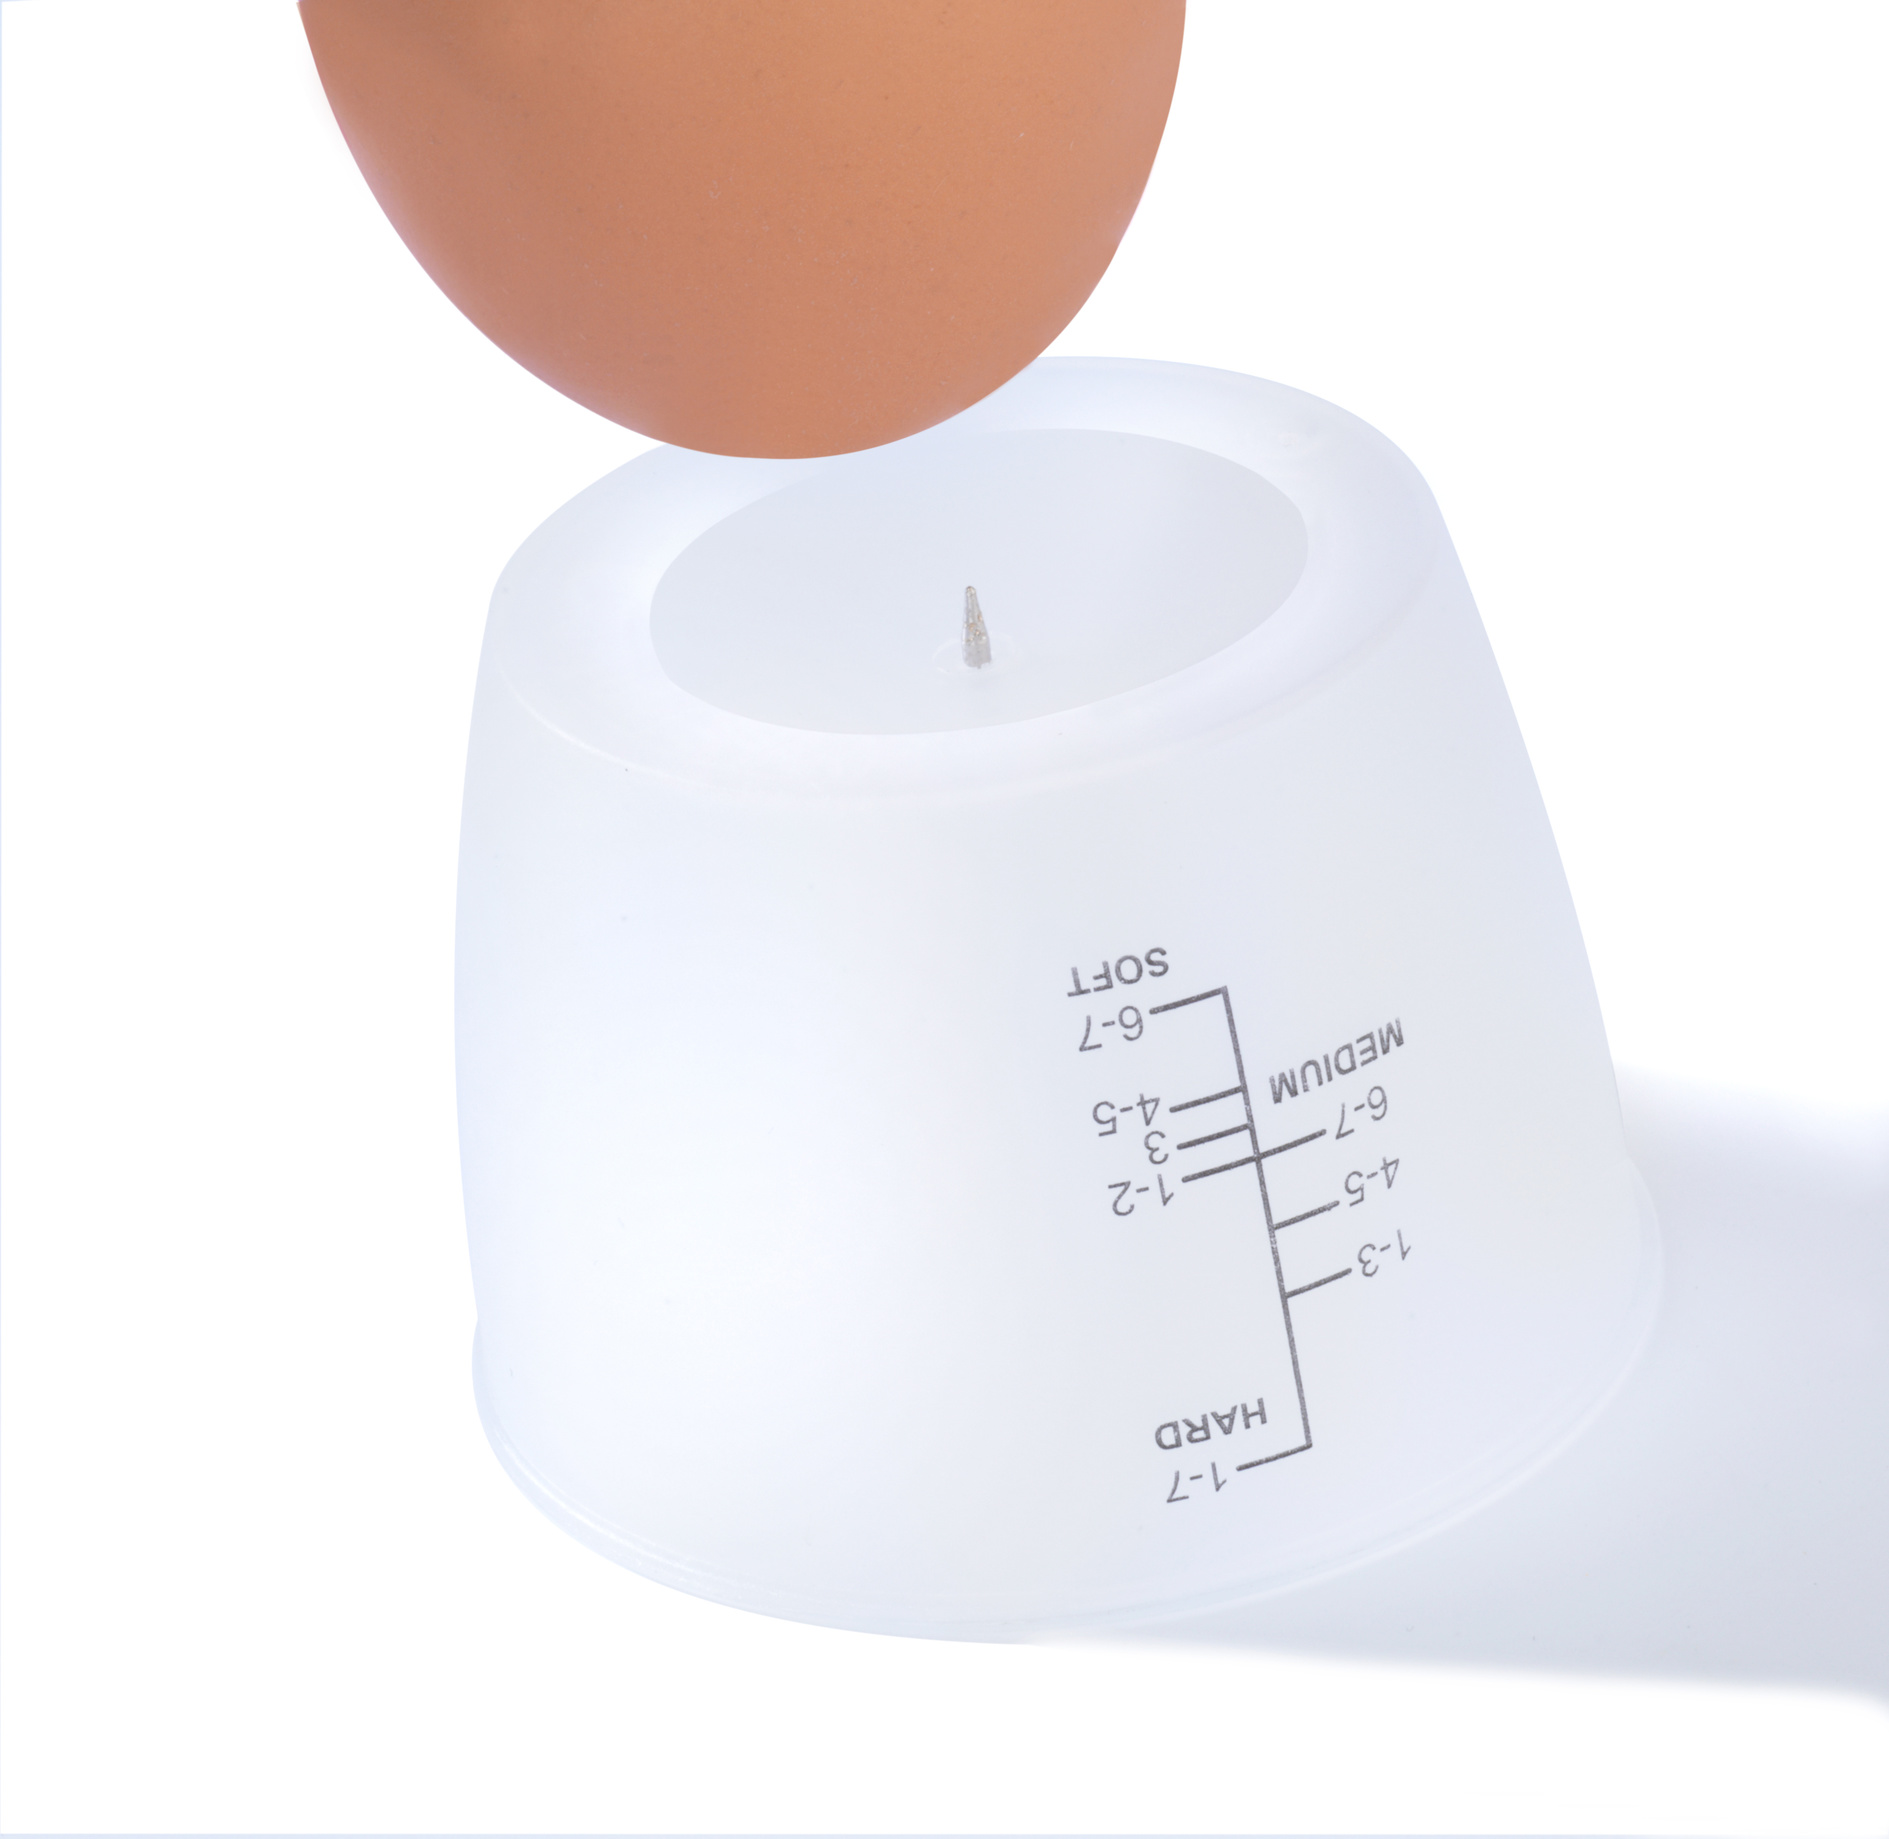 Kochen, - 6 Pochieren, Rührei, Eier Spülmaschinenfest Elektrischer - Eierkocher Eierkocher(Anzahl für Eier: 6) Omelett PETRA